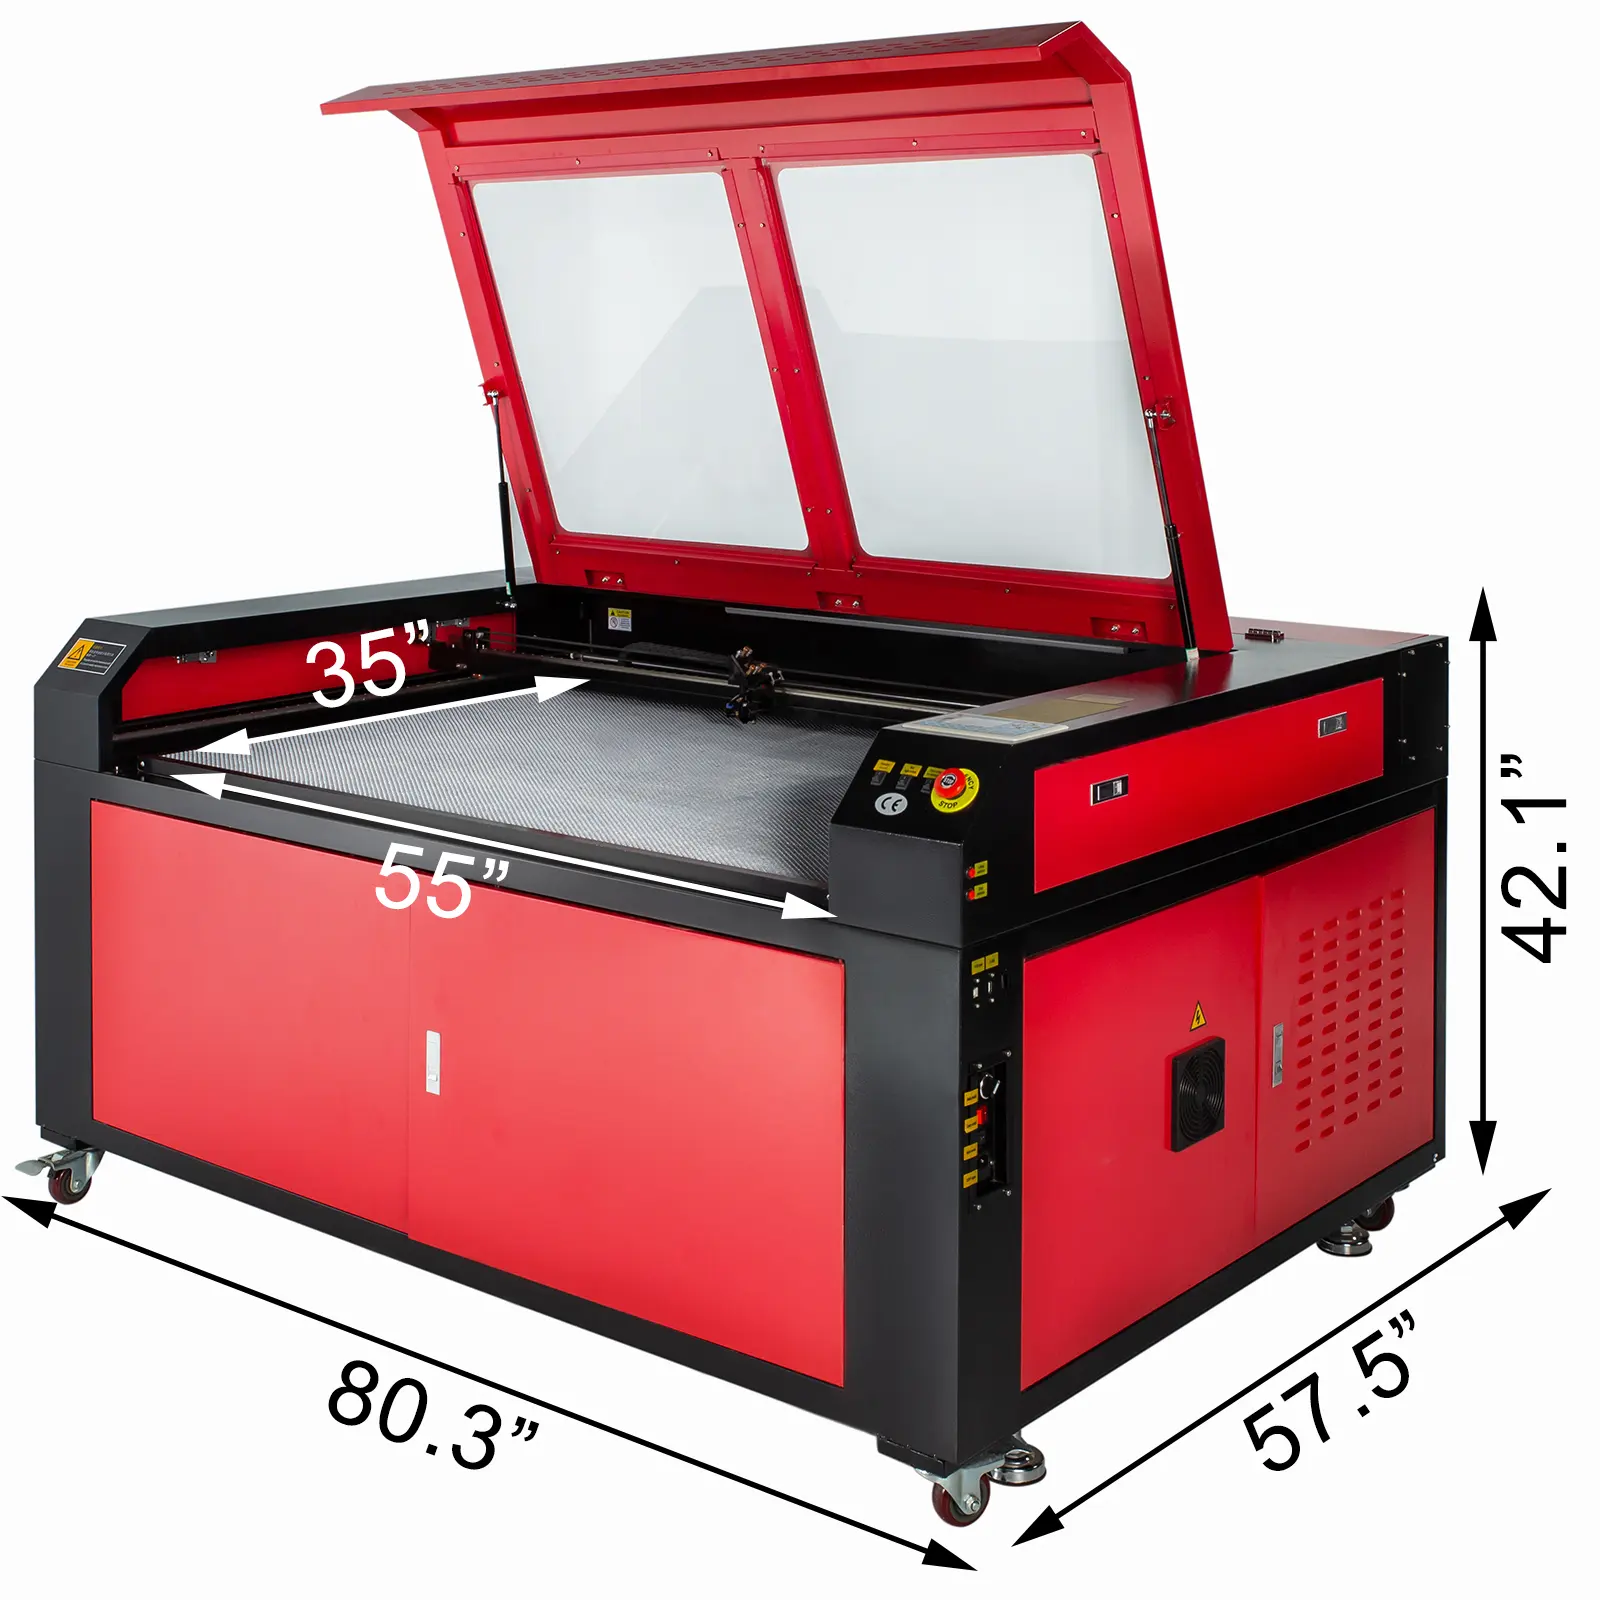 PEIXU-9060 co2 laser 100w 900*600mm laser engraving cutting machine